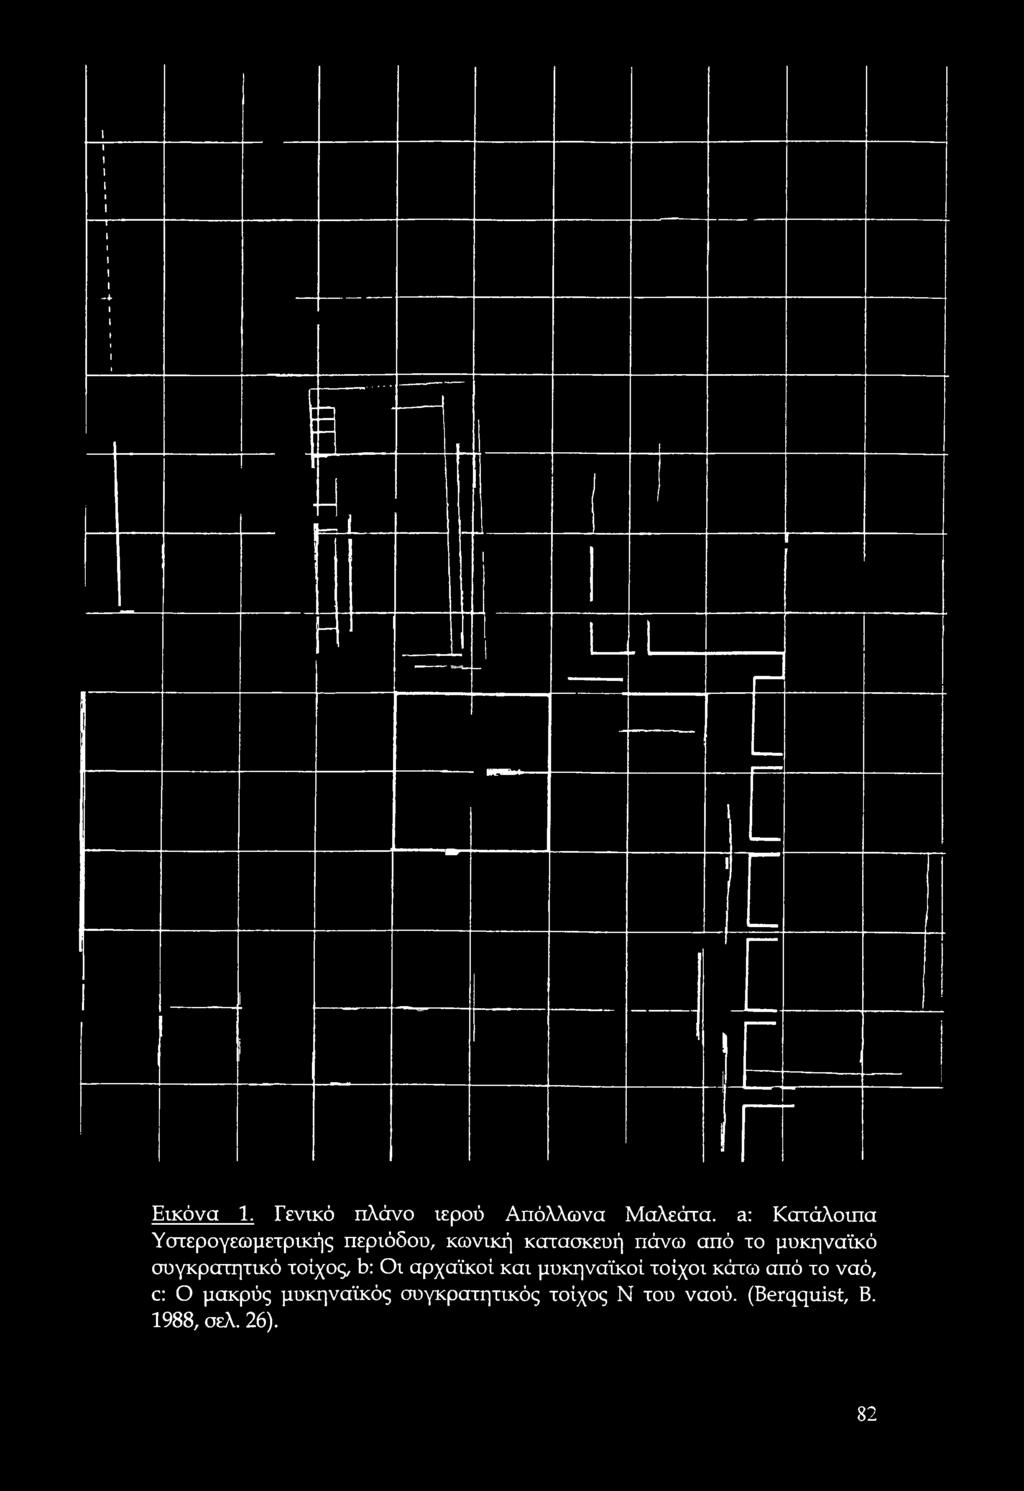 μυκηναϊκό συγκρατητικό τοίχος, b: Οι αρχαϊκοί και μυκηναϊκοί τοίχοι κάτω